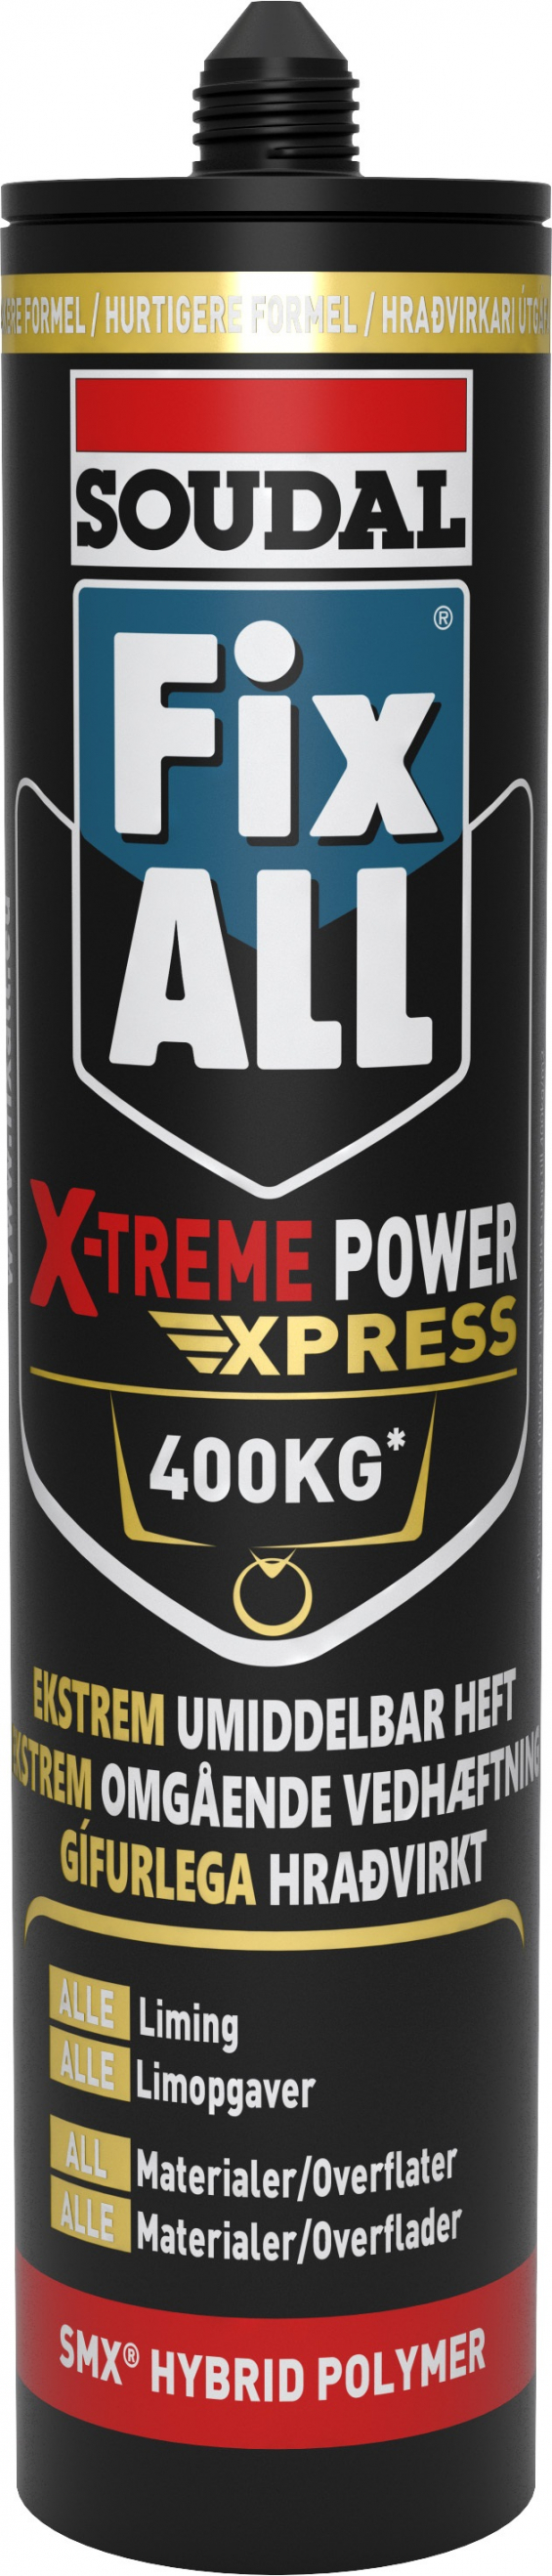 Soudal Fix All X-treme Power Express 